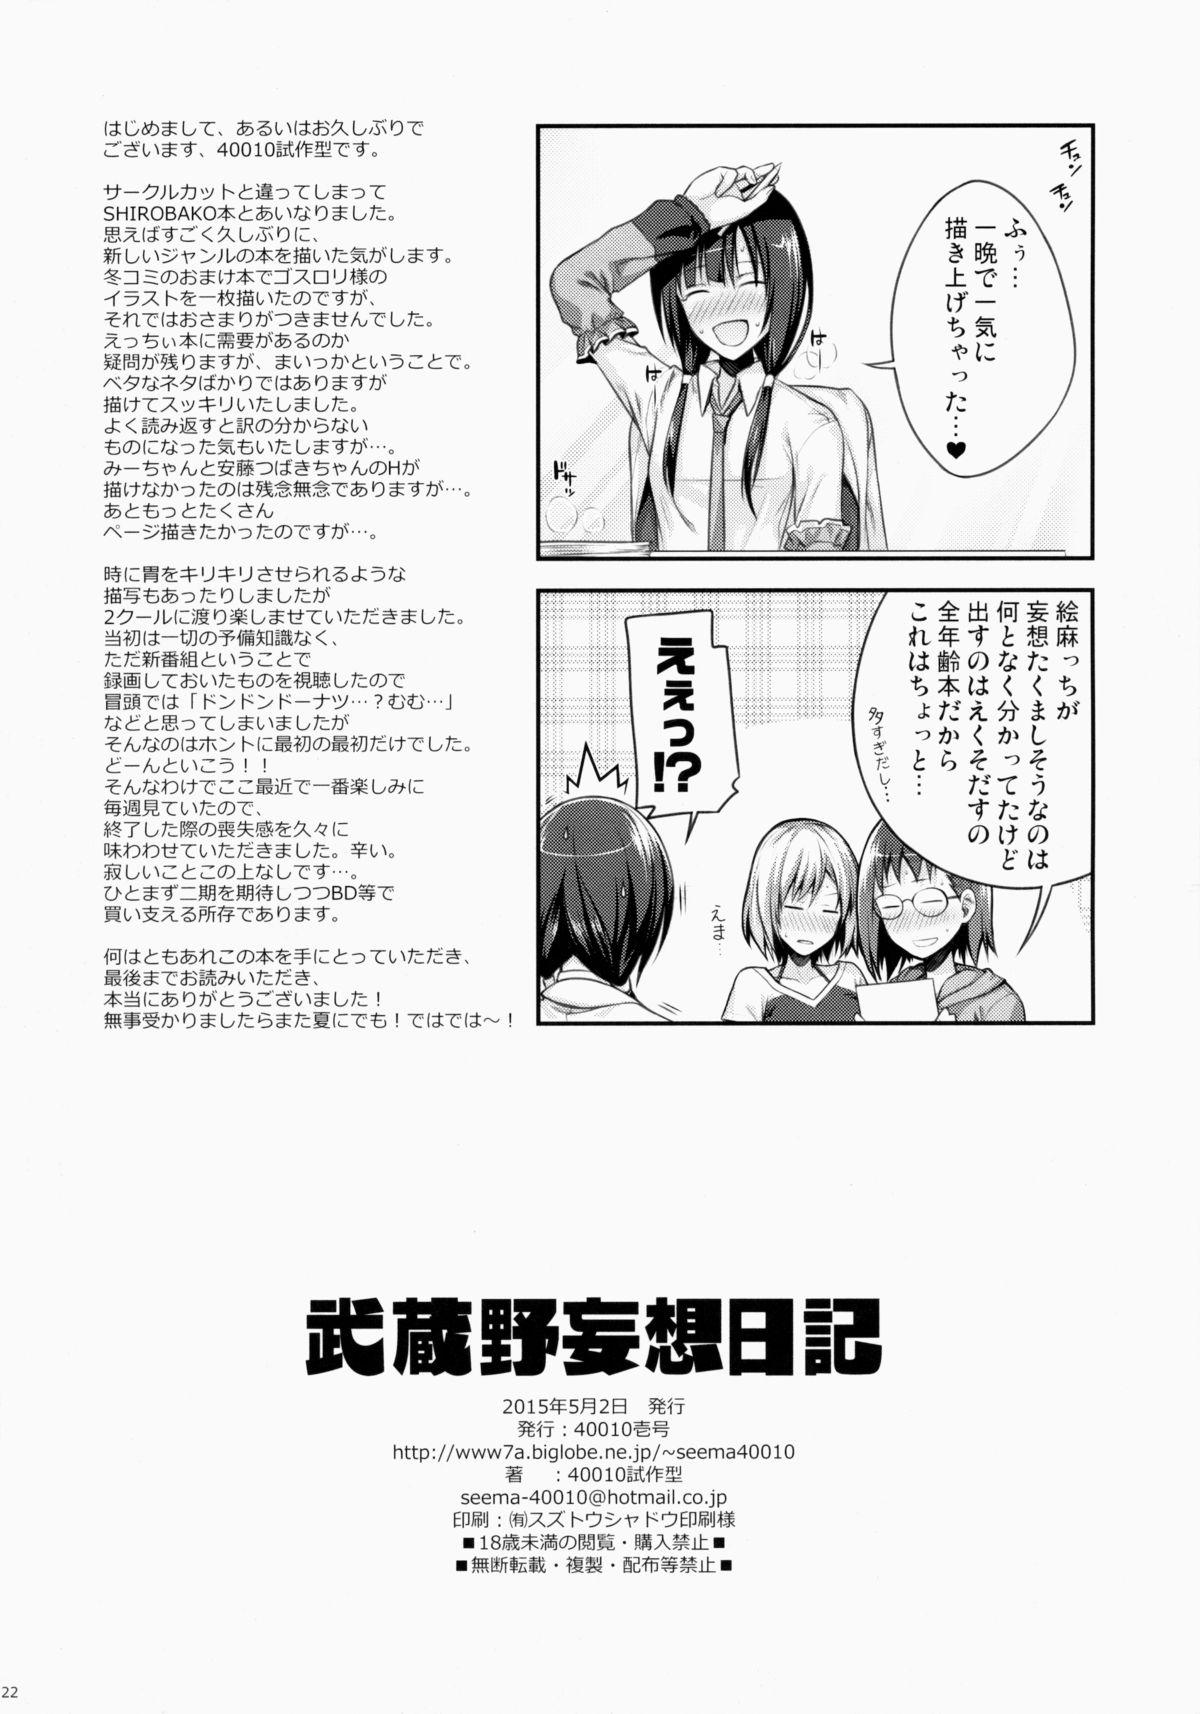 Animation Musashino Mousou Nikki - Shirobako Ruiva - Page 22